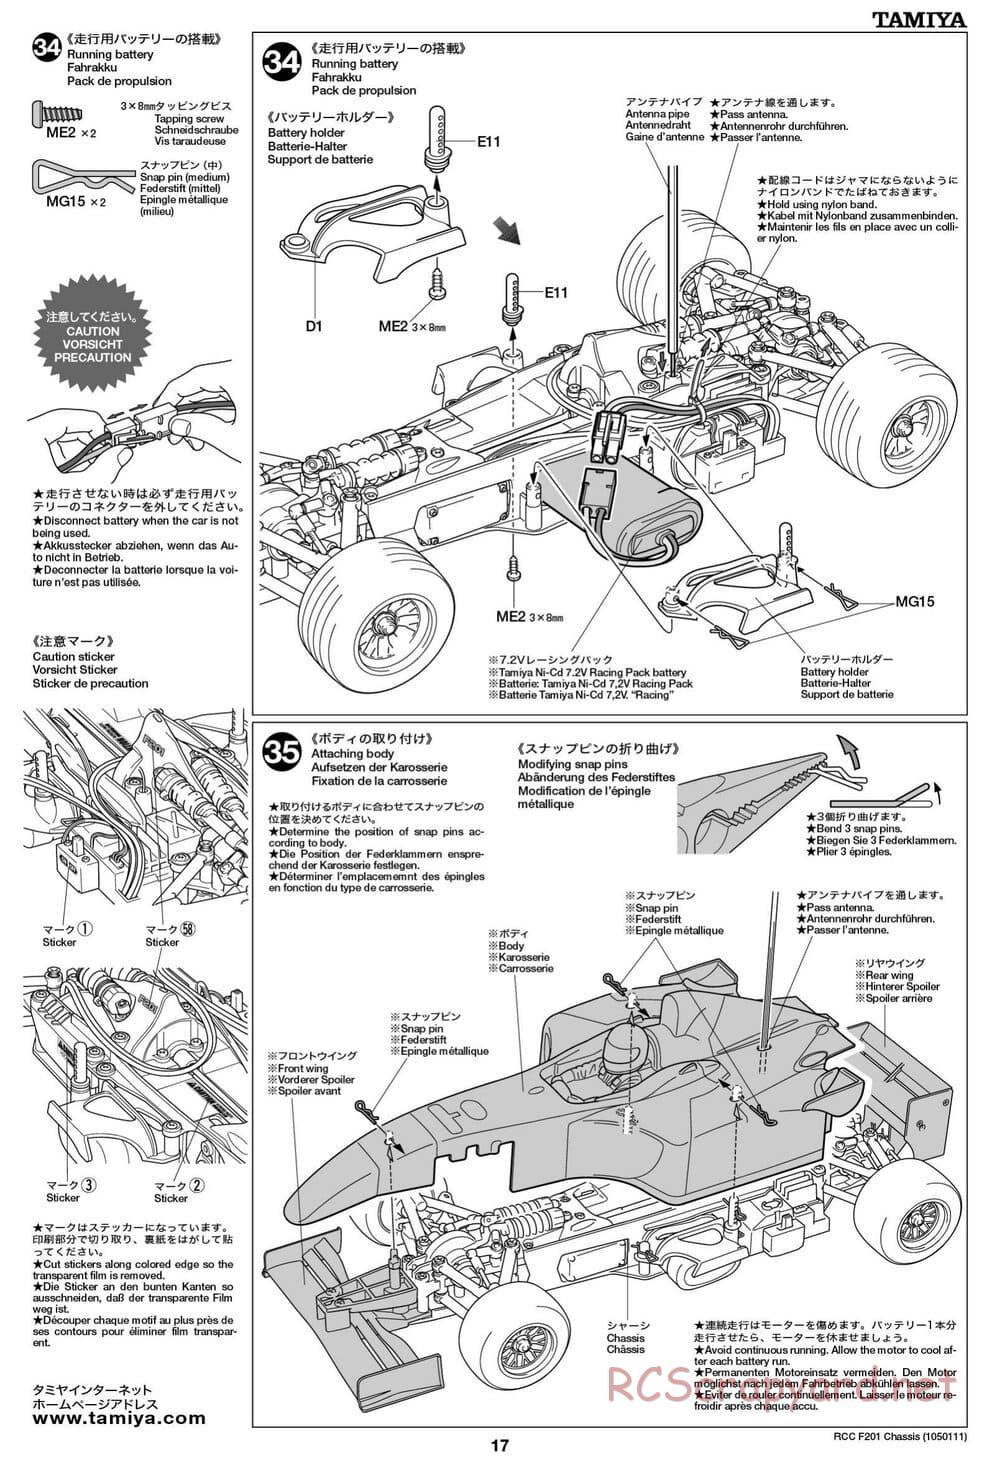 Tamiya - F201 Chassis - Manual - Page 17